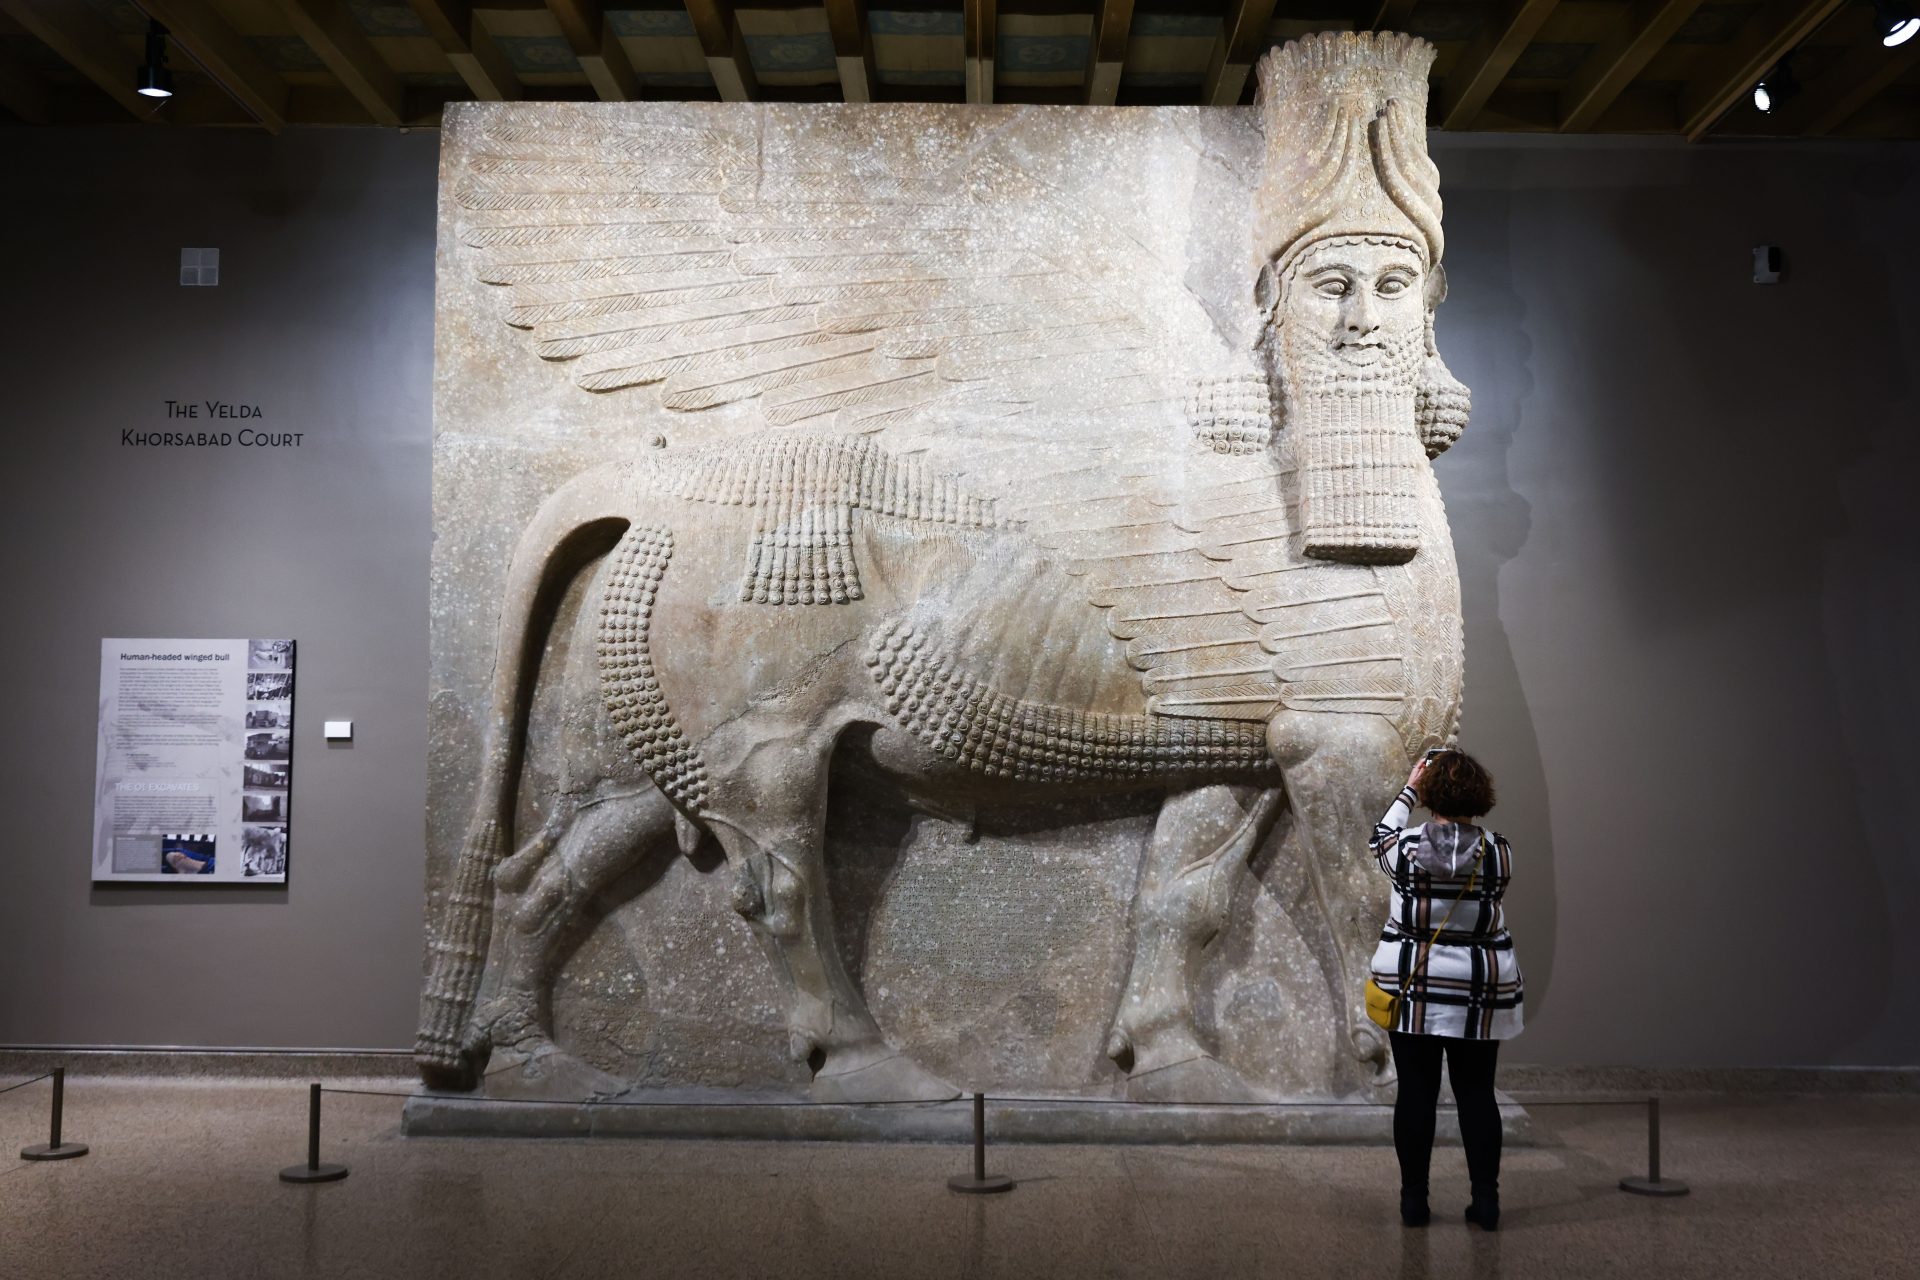 The Assyrian deity Lamassu